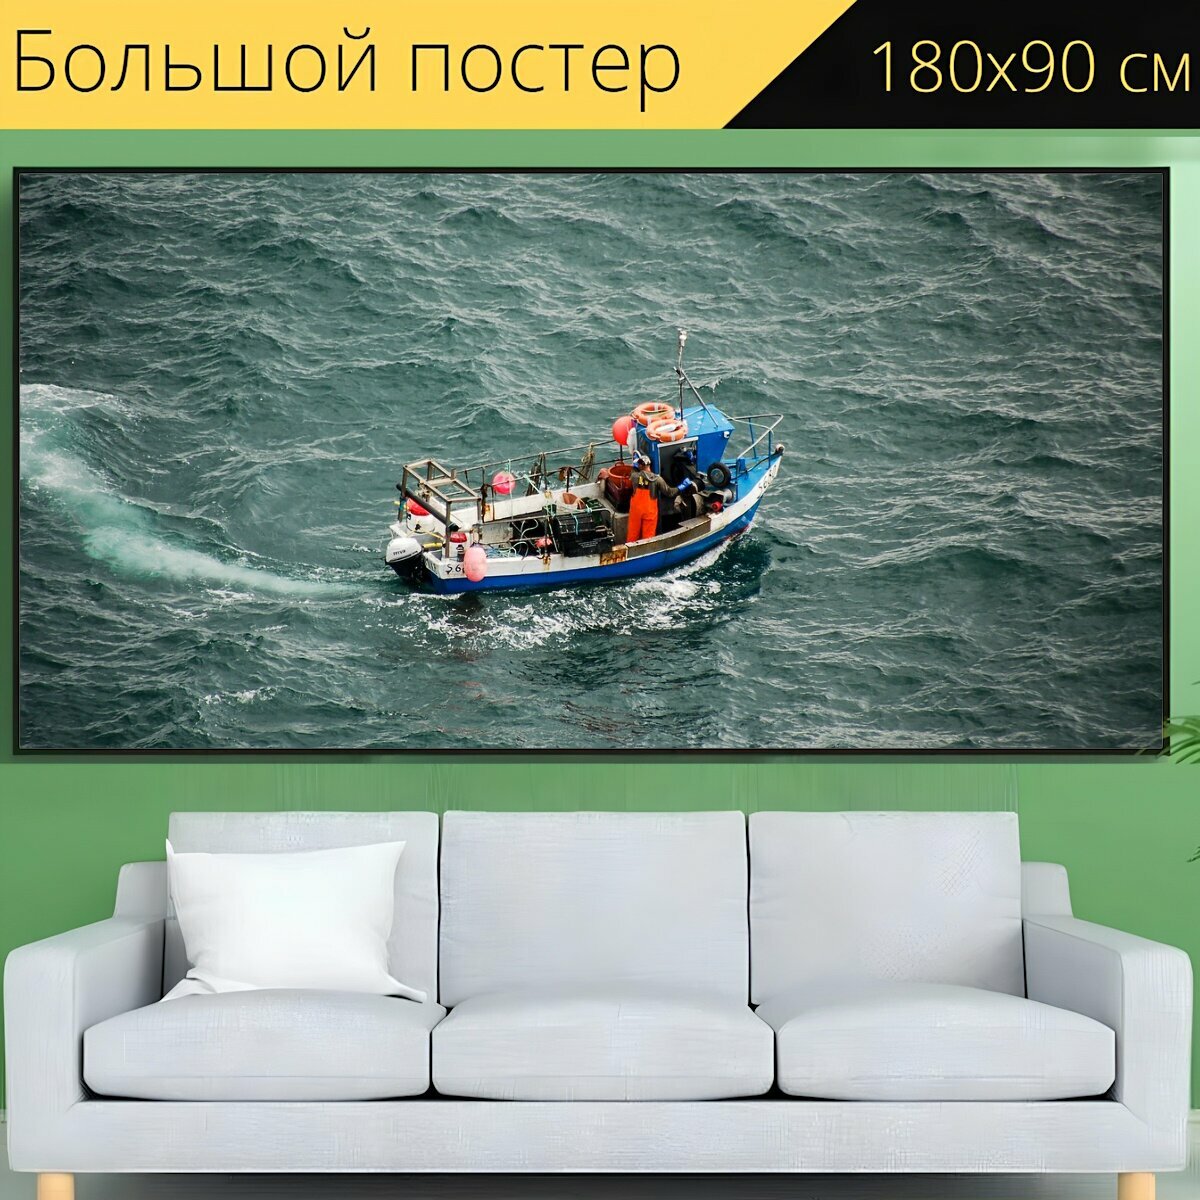 Большой постер "Лодка, рыболовная лодка, море" 180 x 90 см. для интерьера